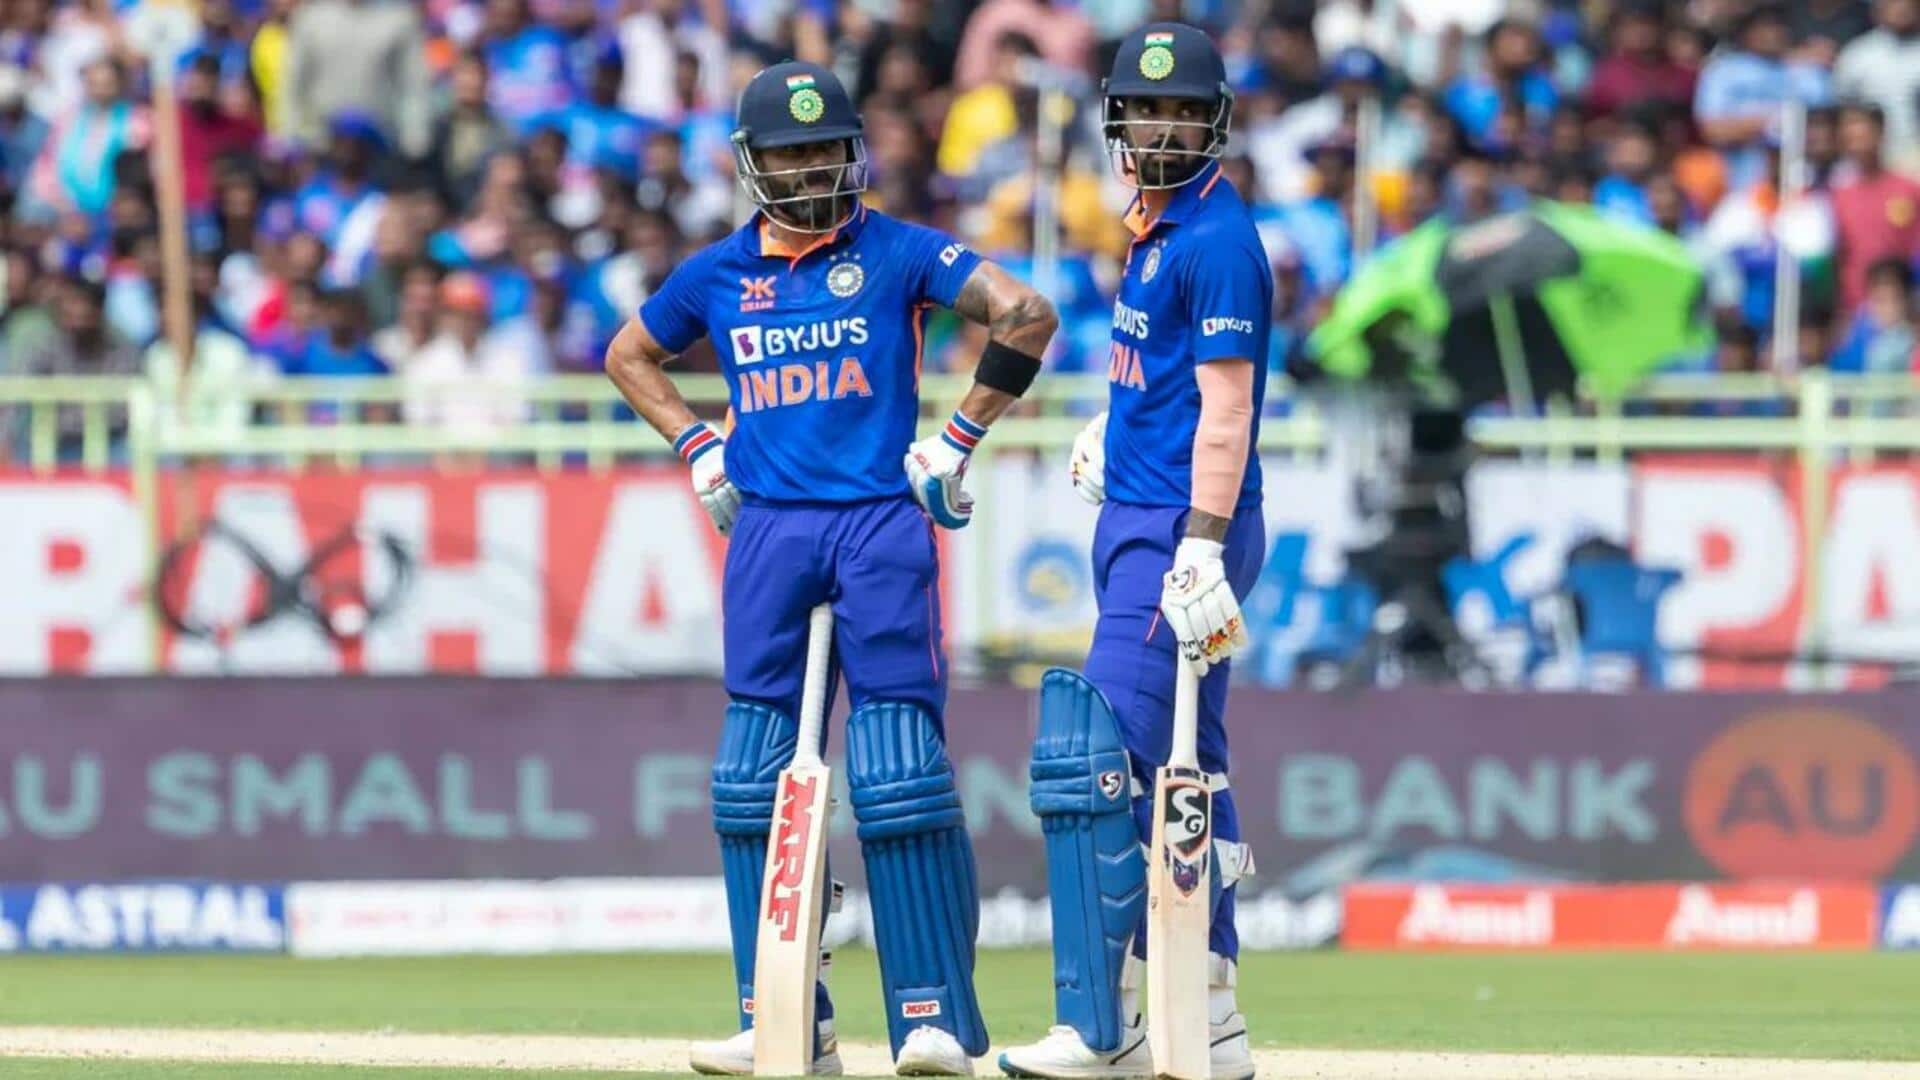 भारत बनाम ऑस्ट्रेलिया: विराट कोहली हासिल कर सकते हैं बड़ी उपलब्धि, केवल 47 रनों की जरूरत